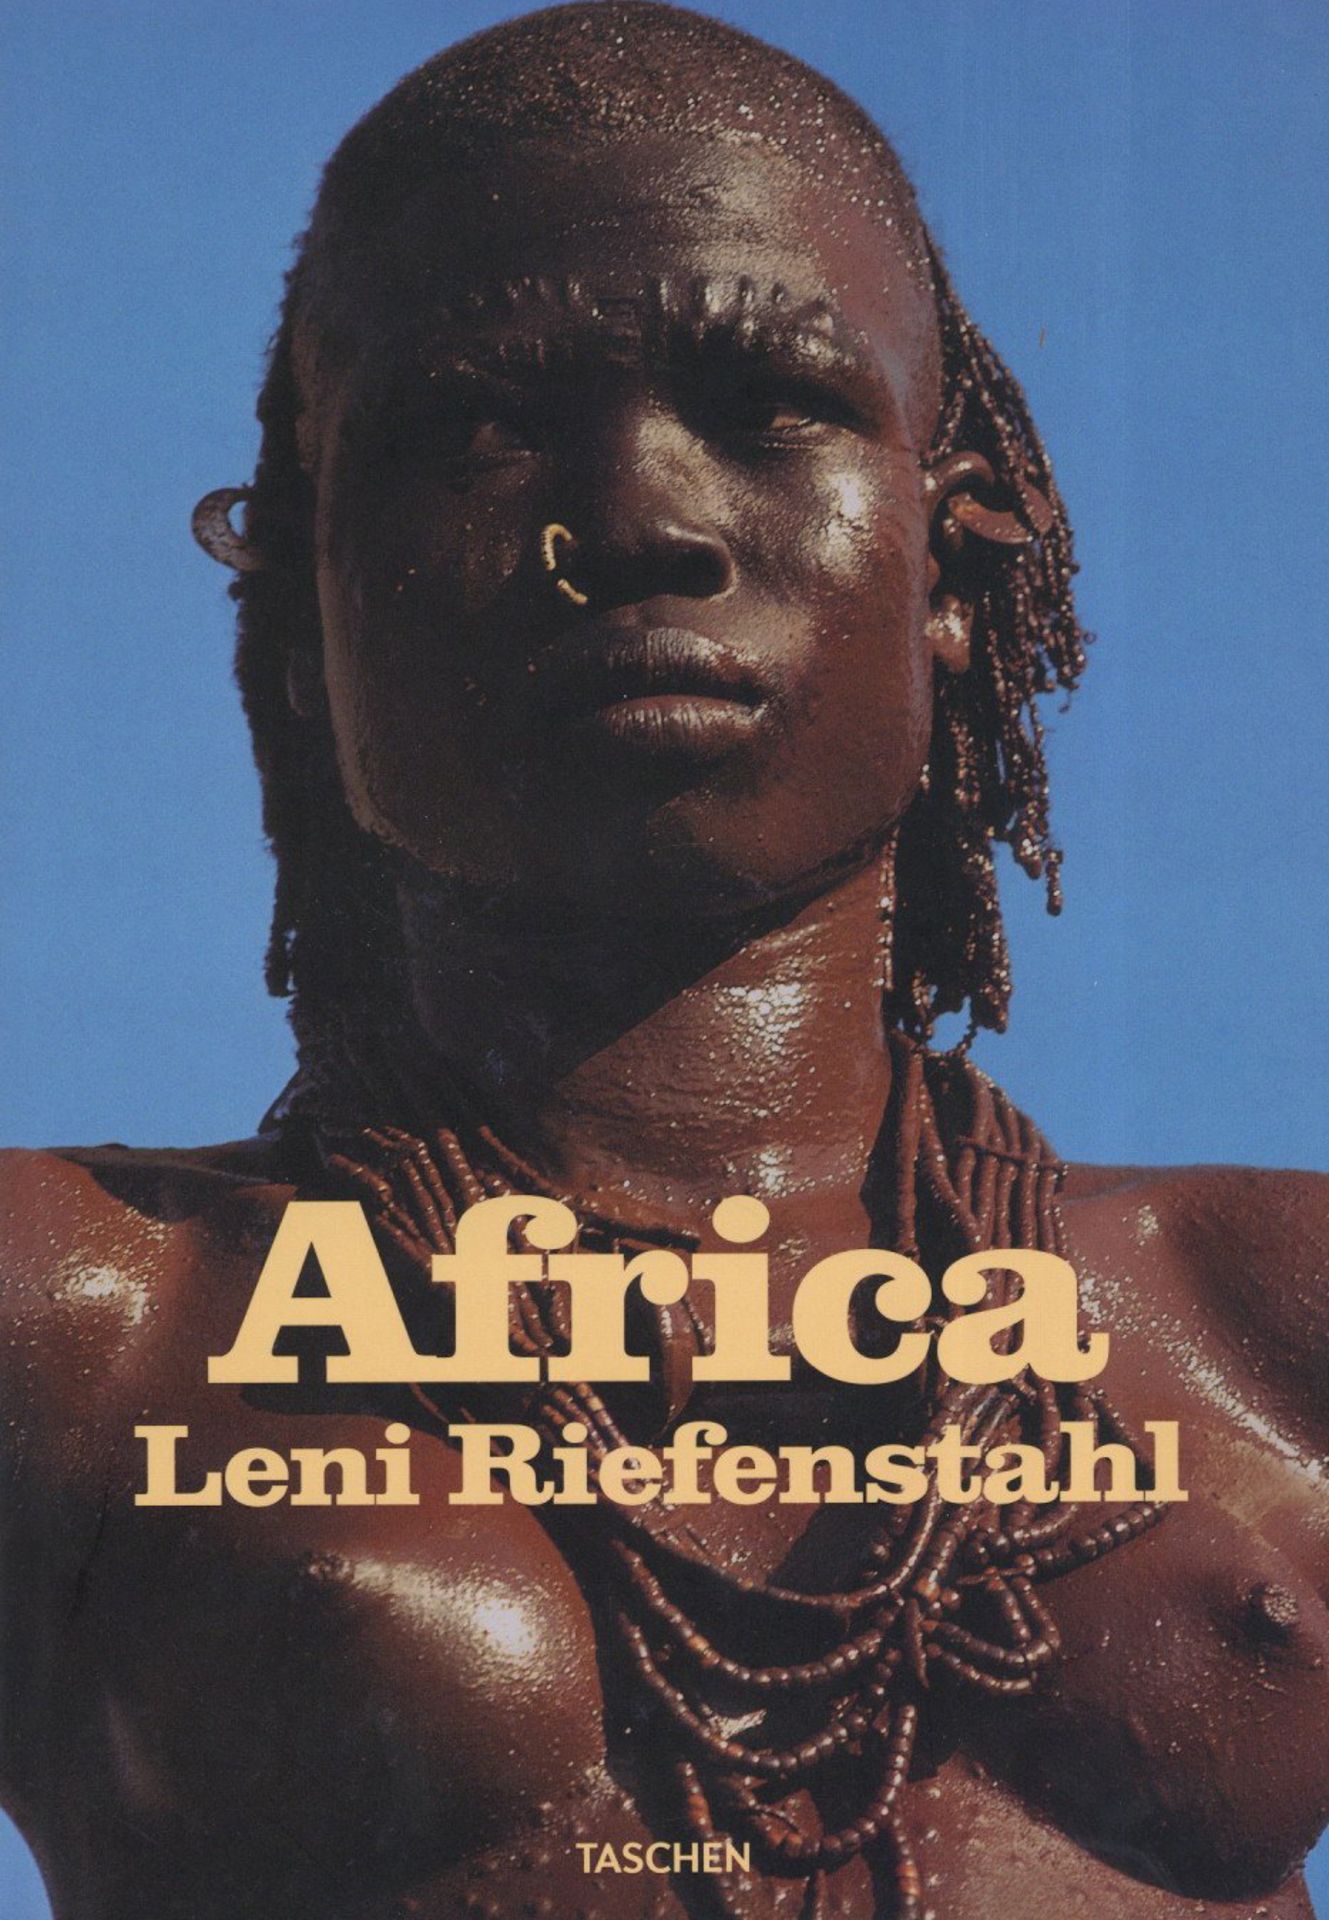 Buch WK II Africa Riefenstahl, Leni 2010 Verlag Taschen 400 Seiten sehr viele Abbildungen